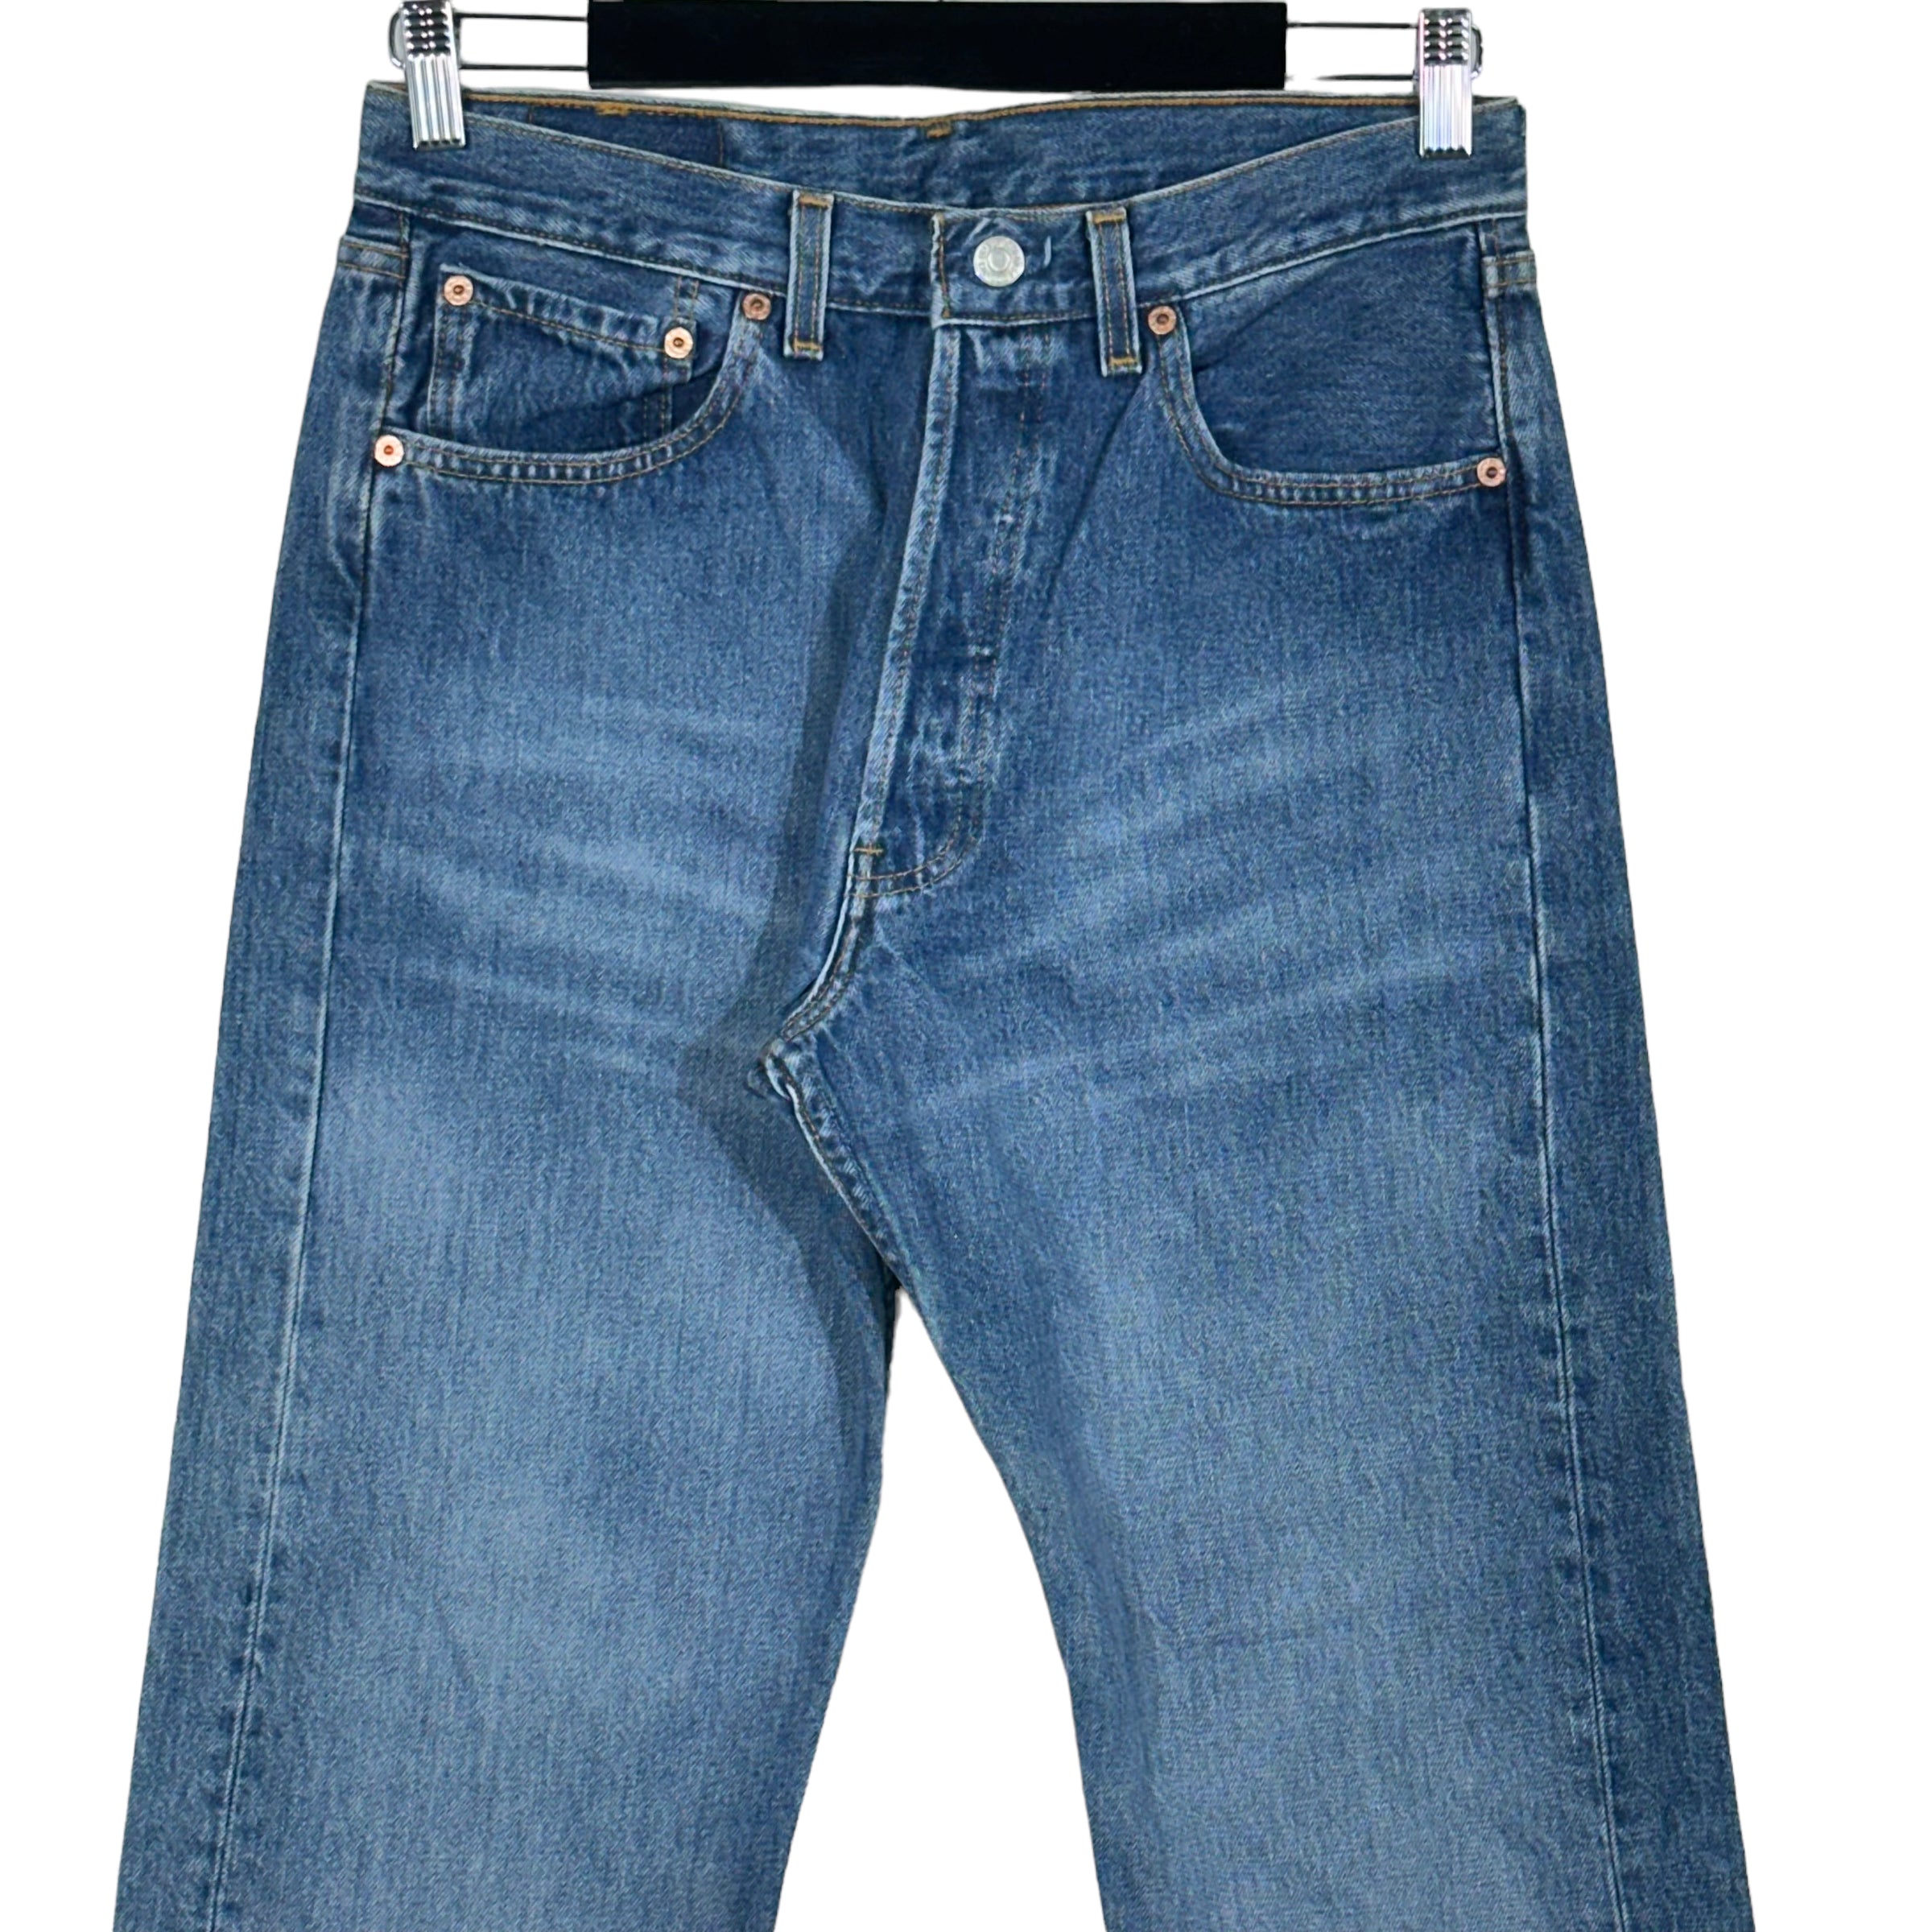 Vintage Levi's 501 Denim Jeans 90s